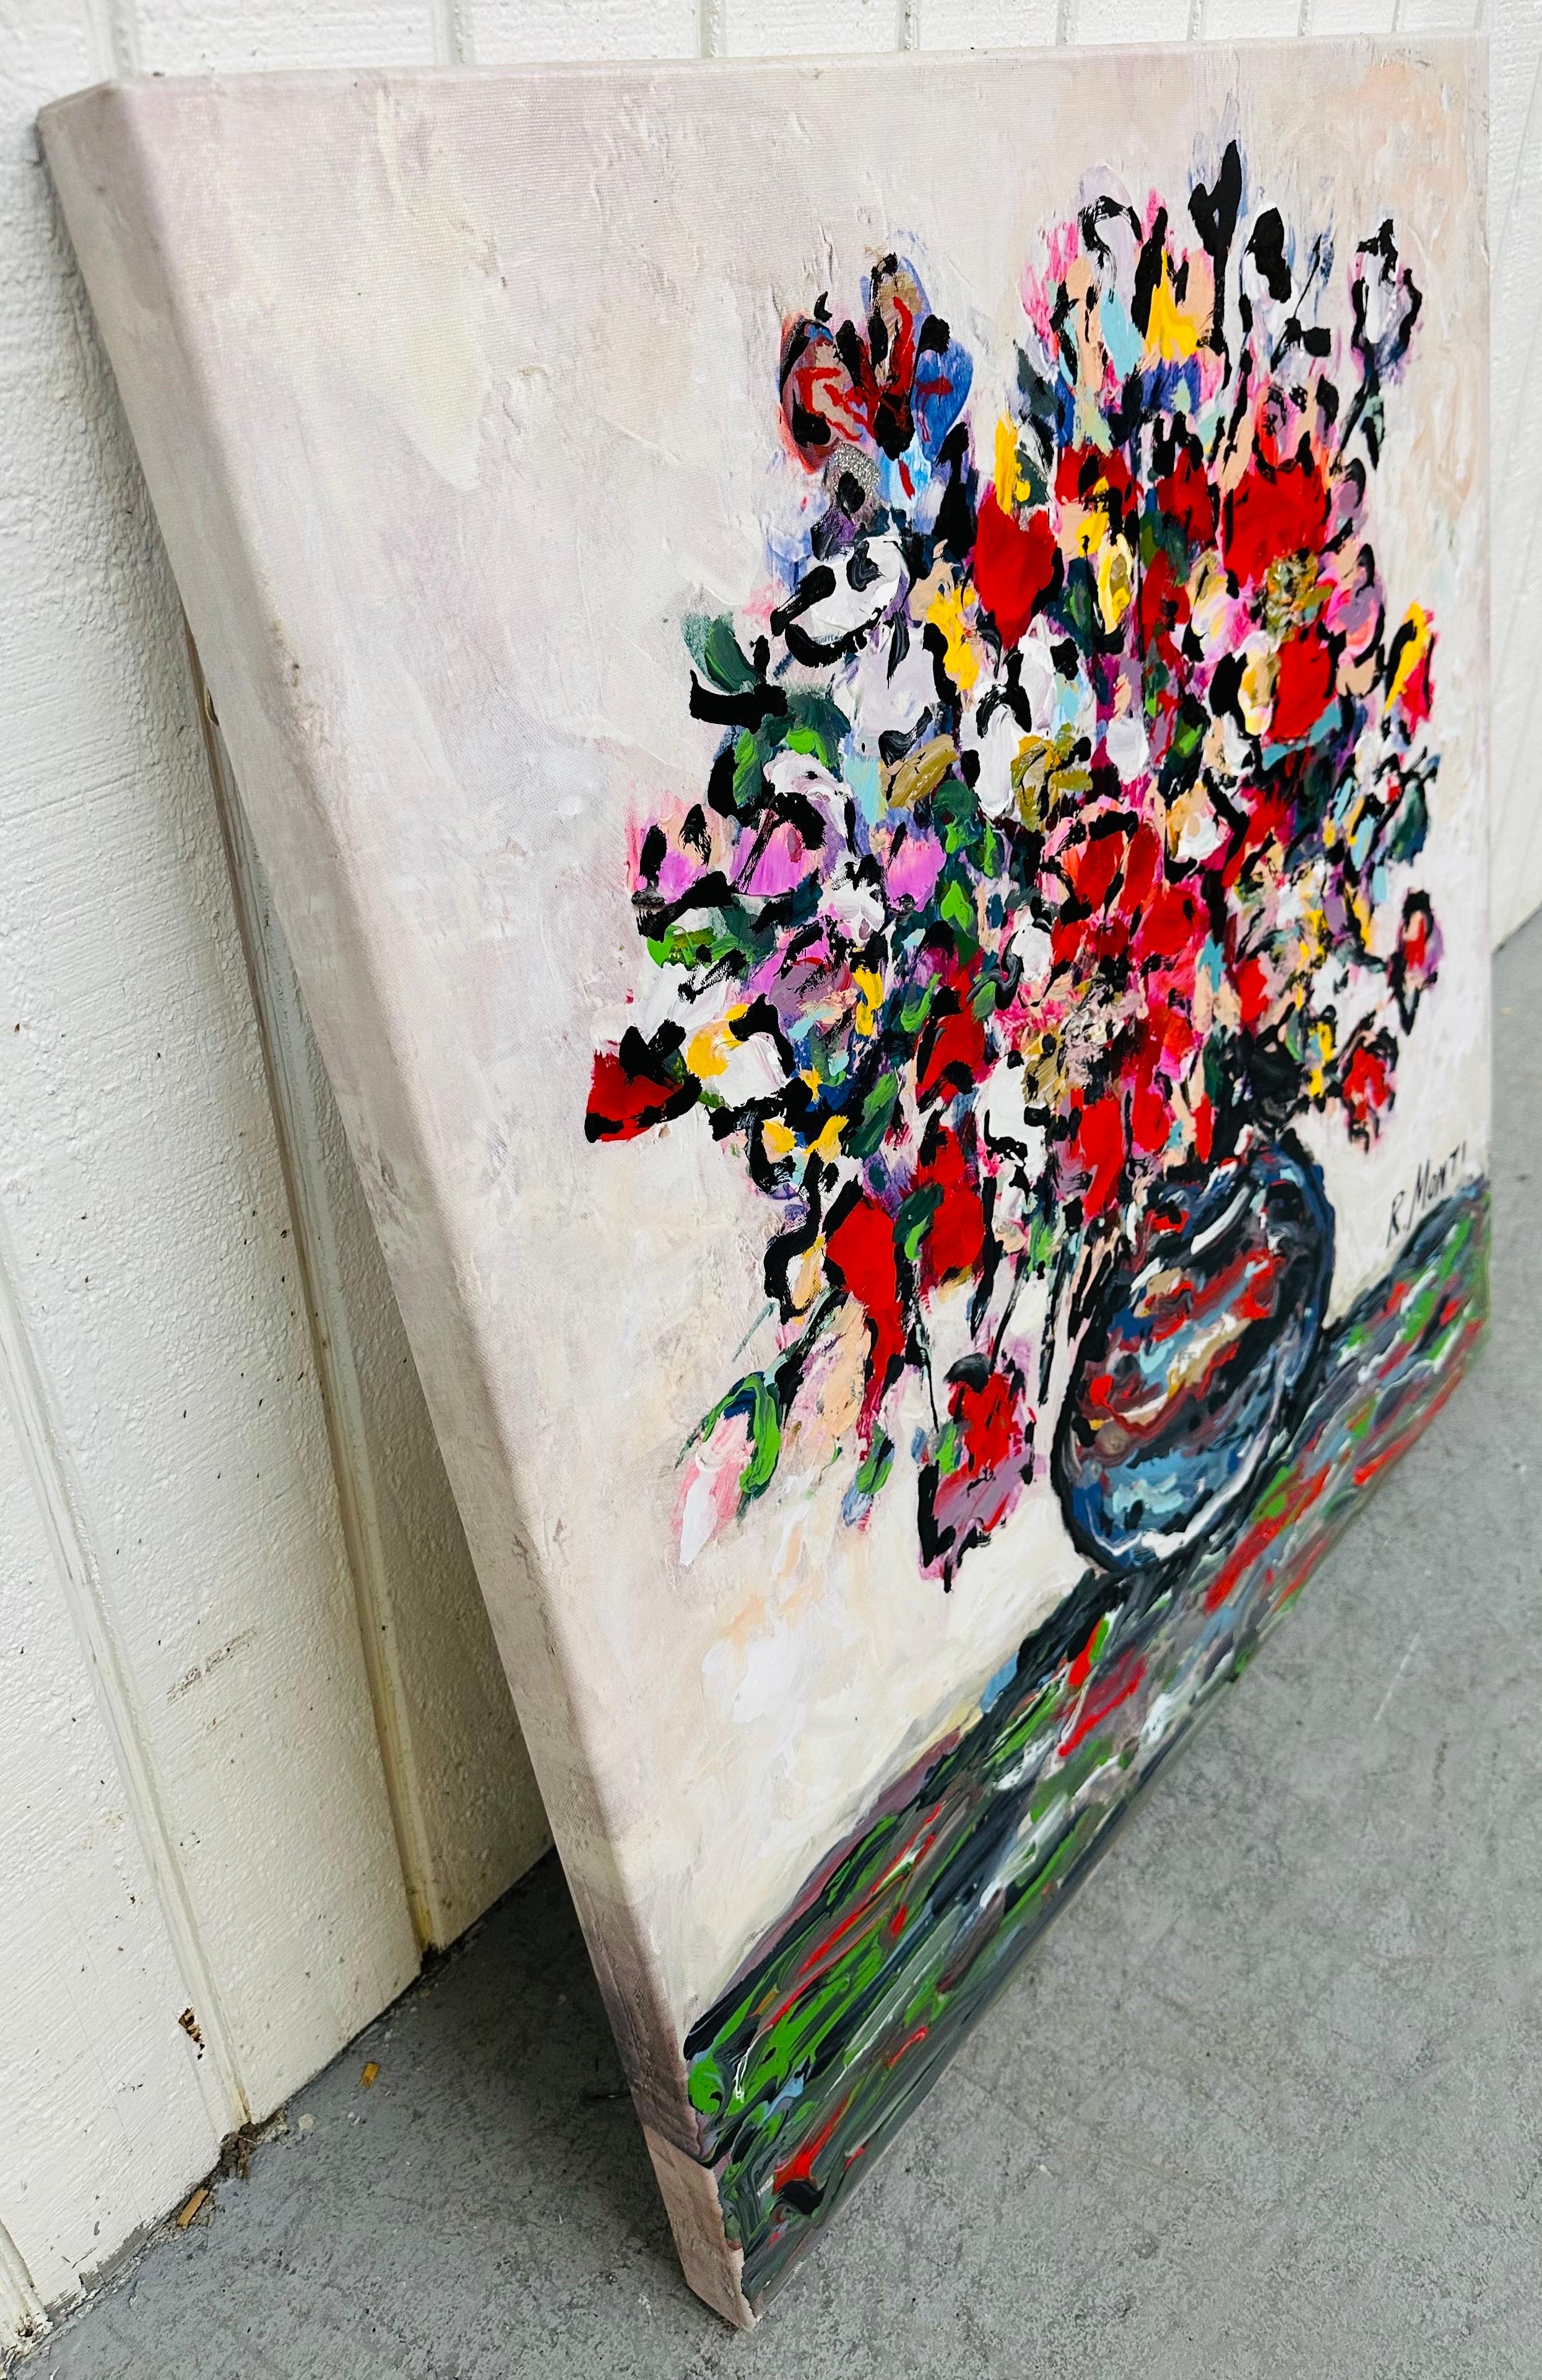 Cette annonce concerne une peinture abstraite florale moderne signée R. Montys. Cadre carré en toile, peinture abstraite de fleurs dans un vase, fil de fer au dos pour la suspension. Il s'agit d'une pièce exceptionnelle de l'artiste R. Montis.